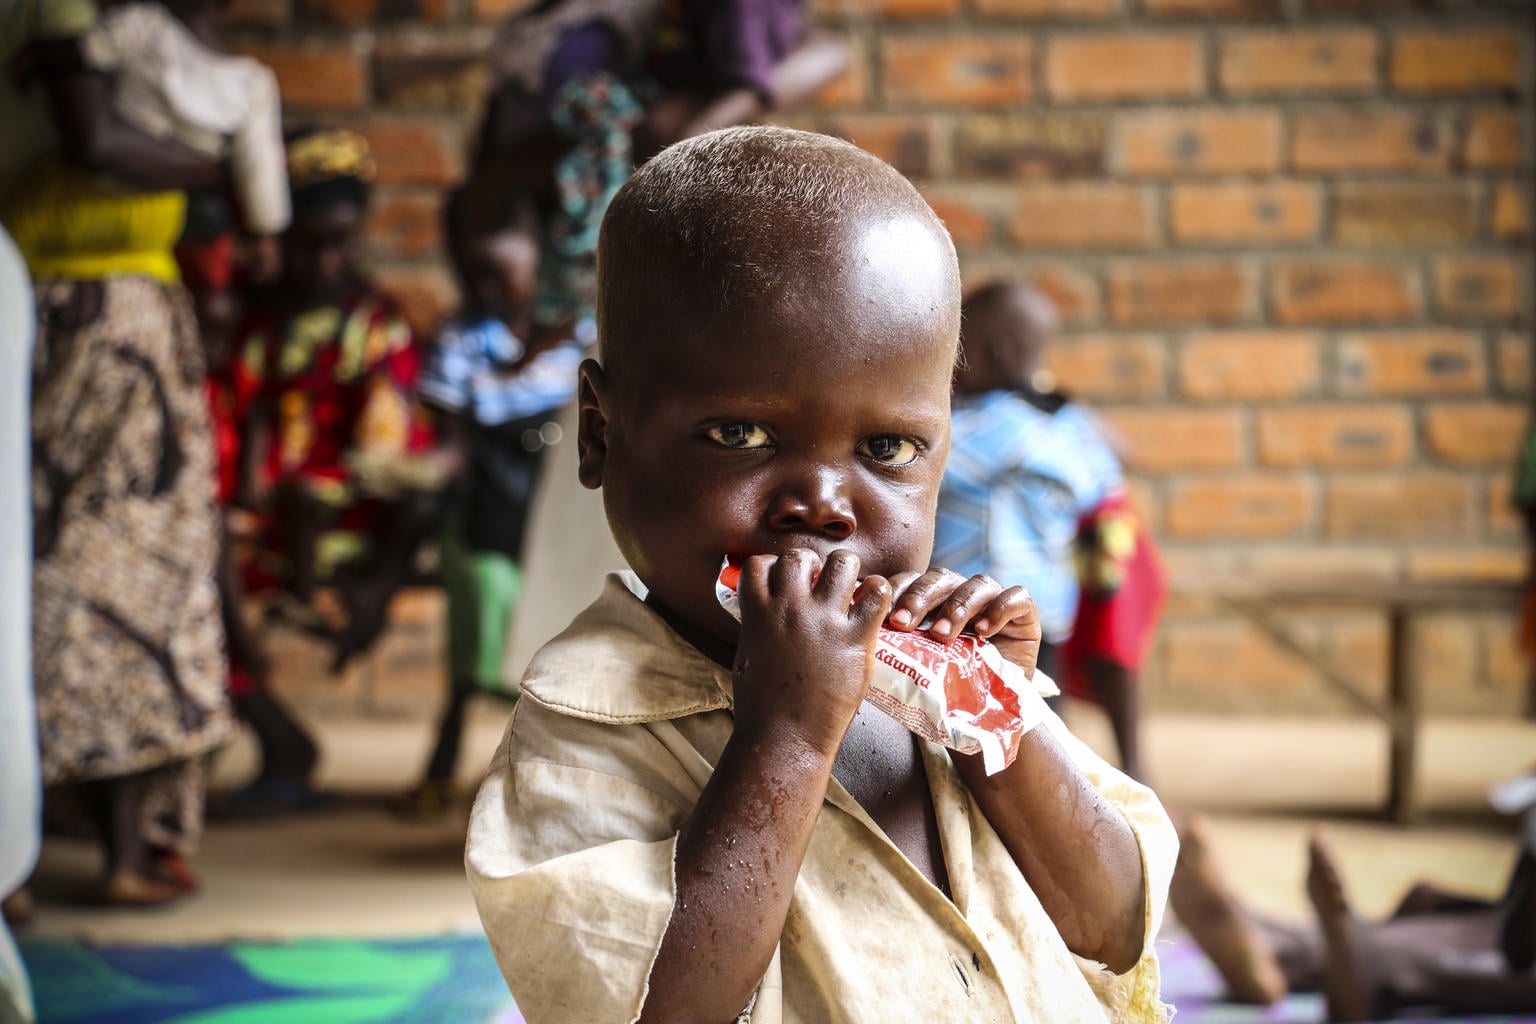 中央アフリカ共和国 深刻な栄養危機、避難民の増加 ユニセフ最新報告書発表